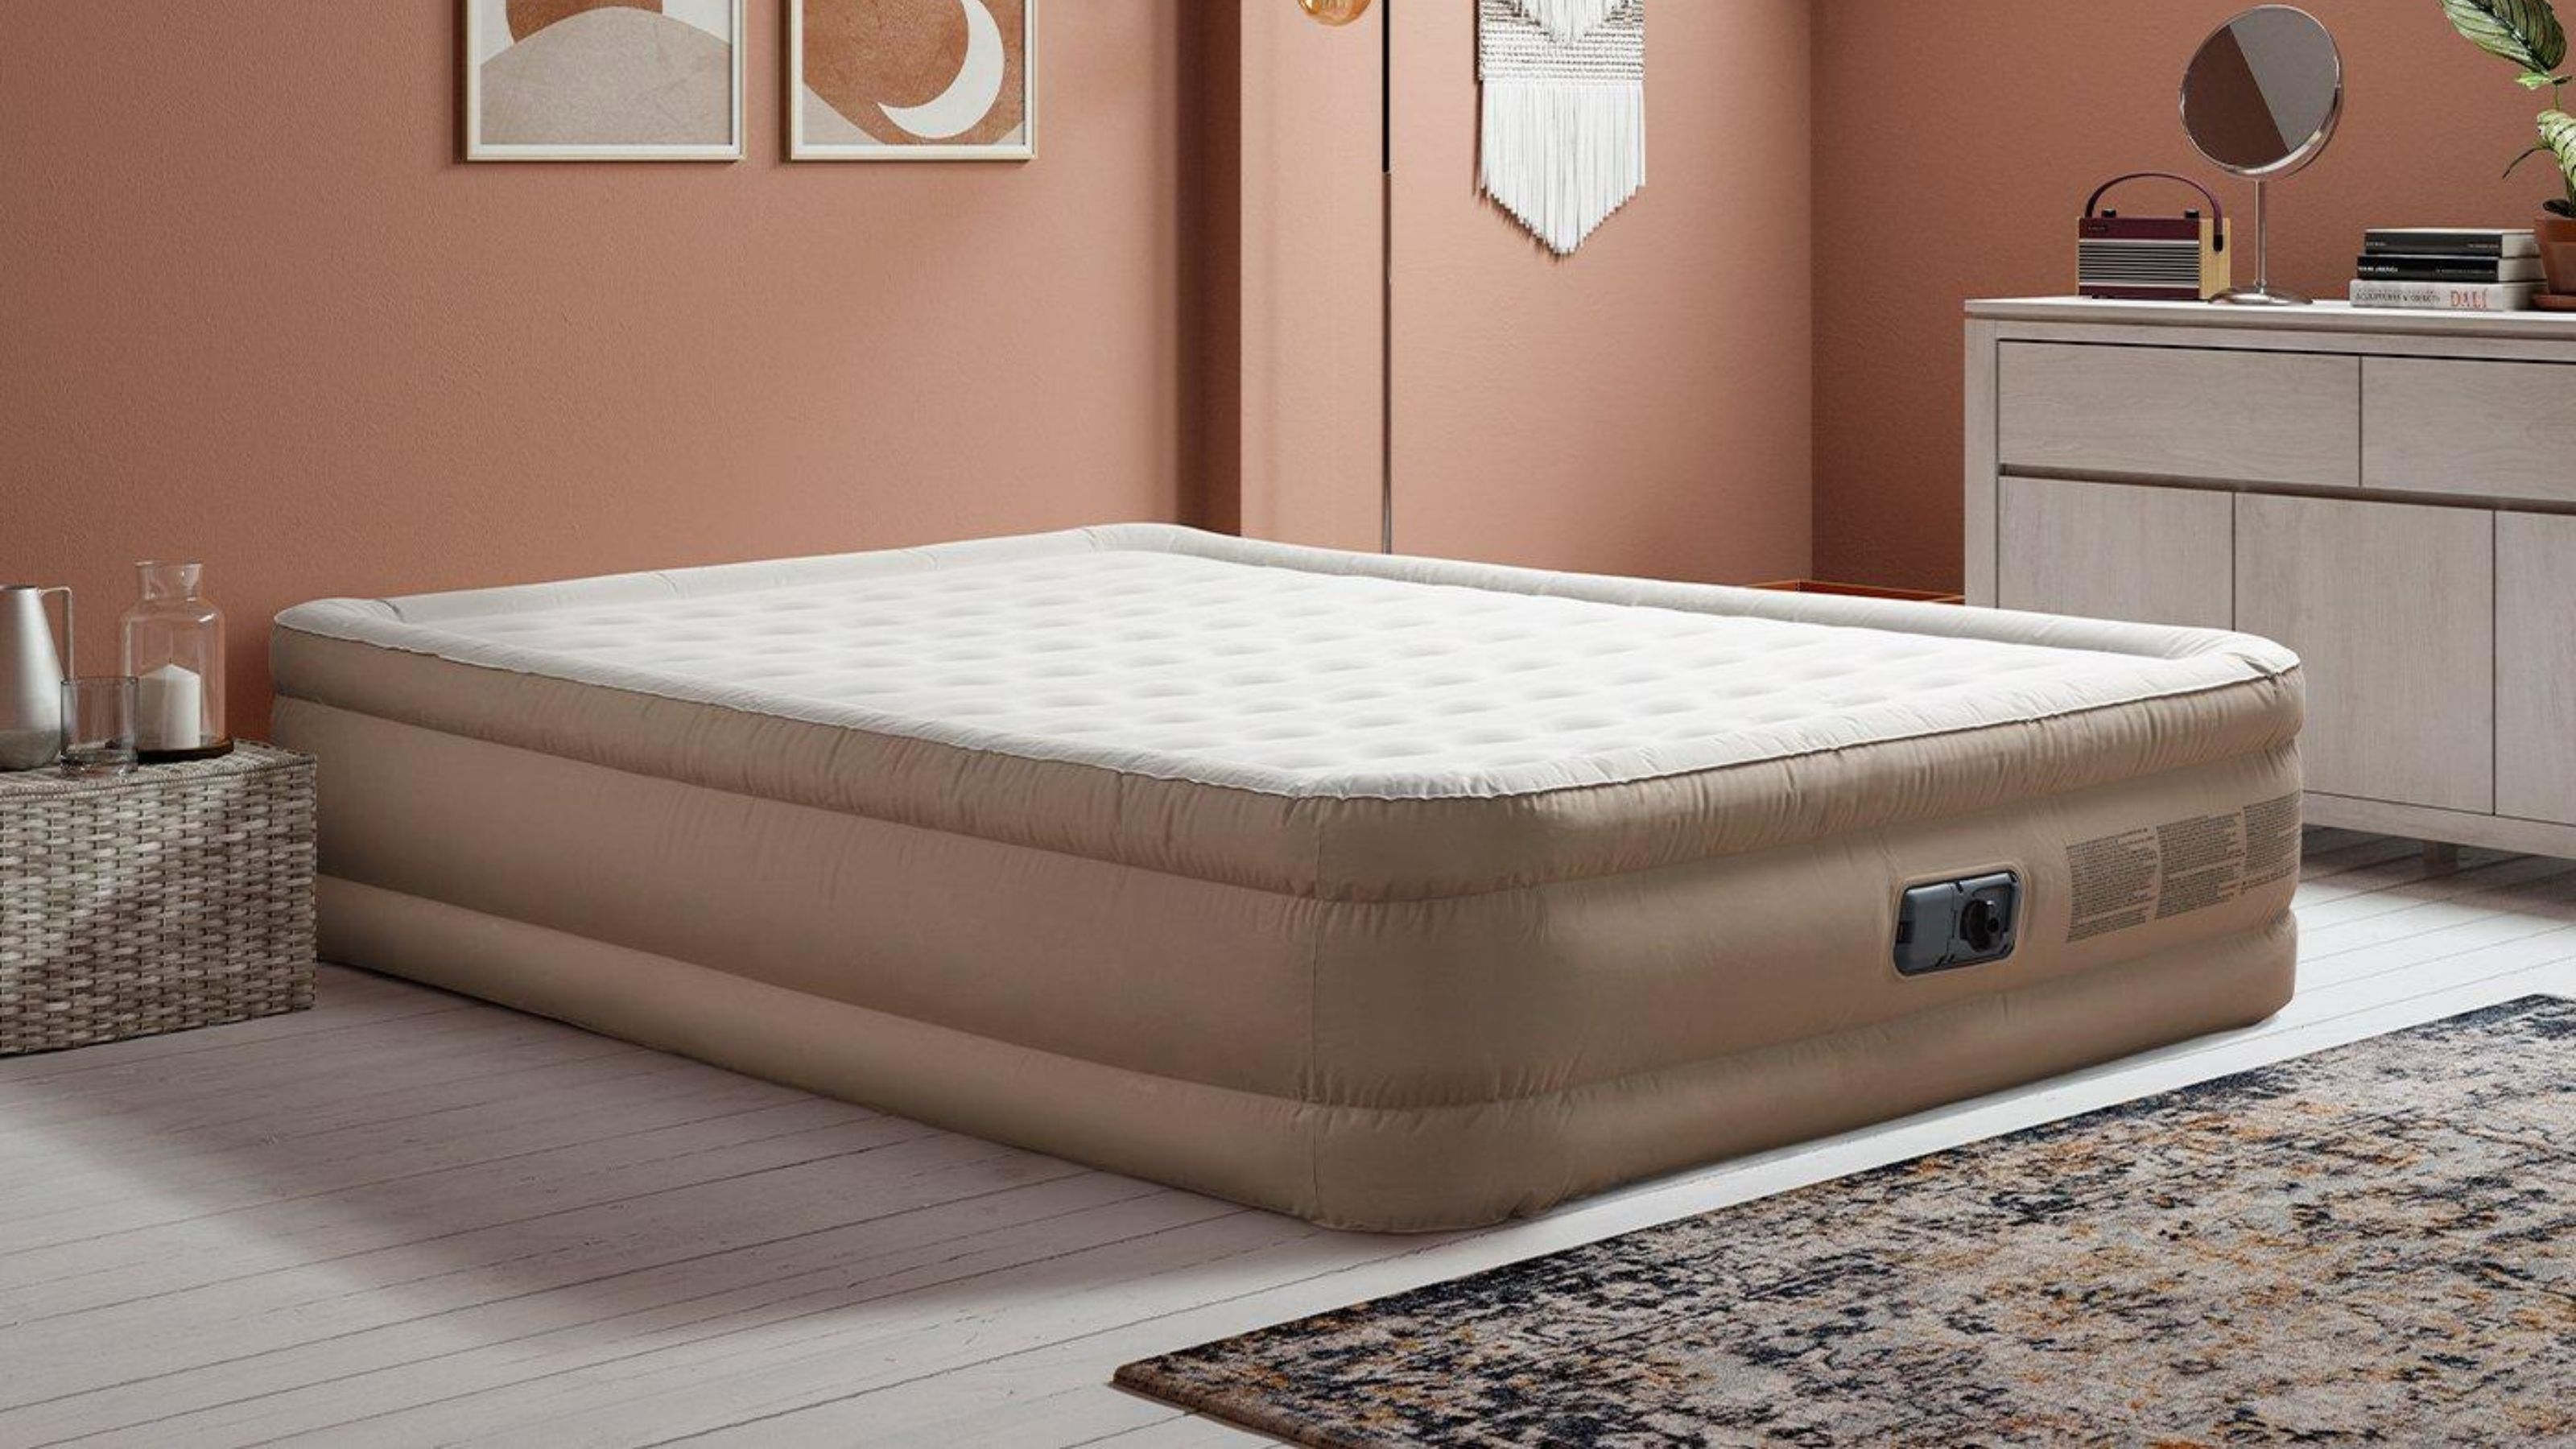 Can you use a mattress topper on an air mattress?